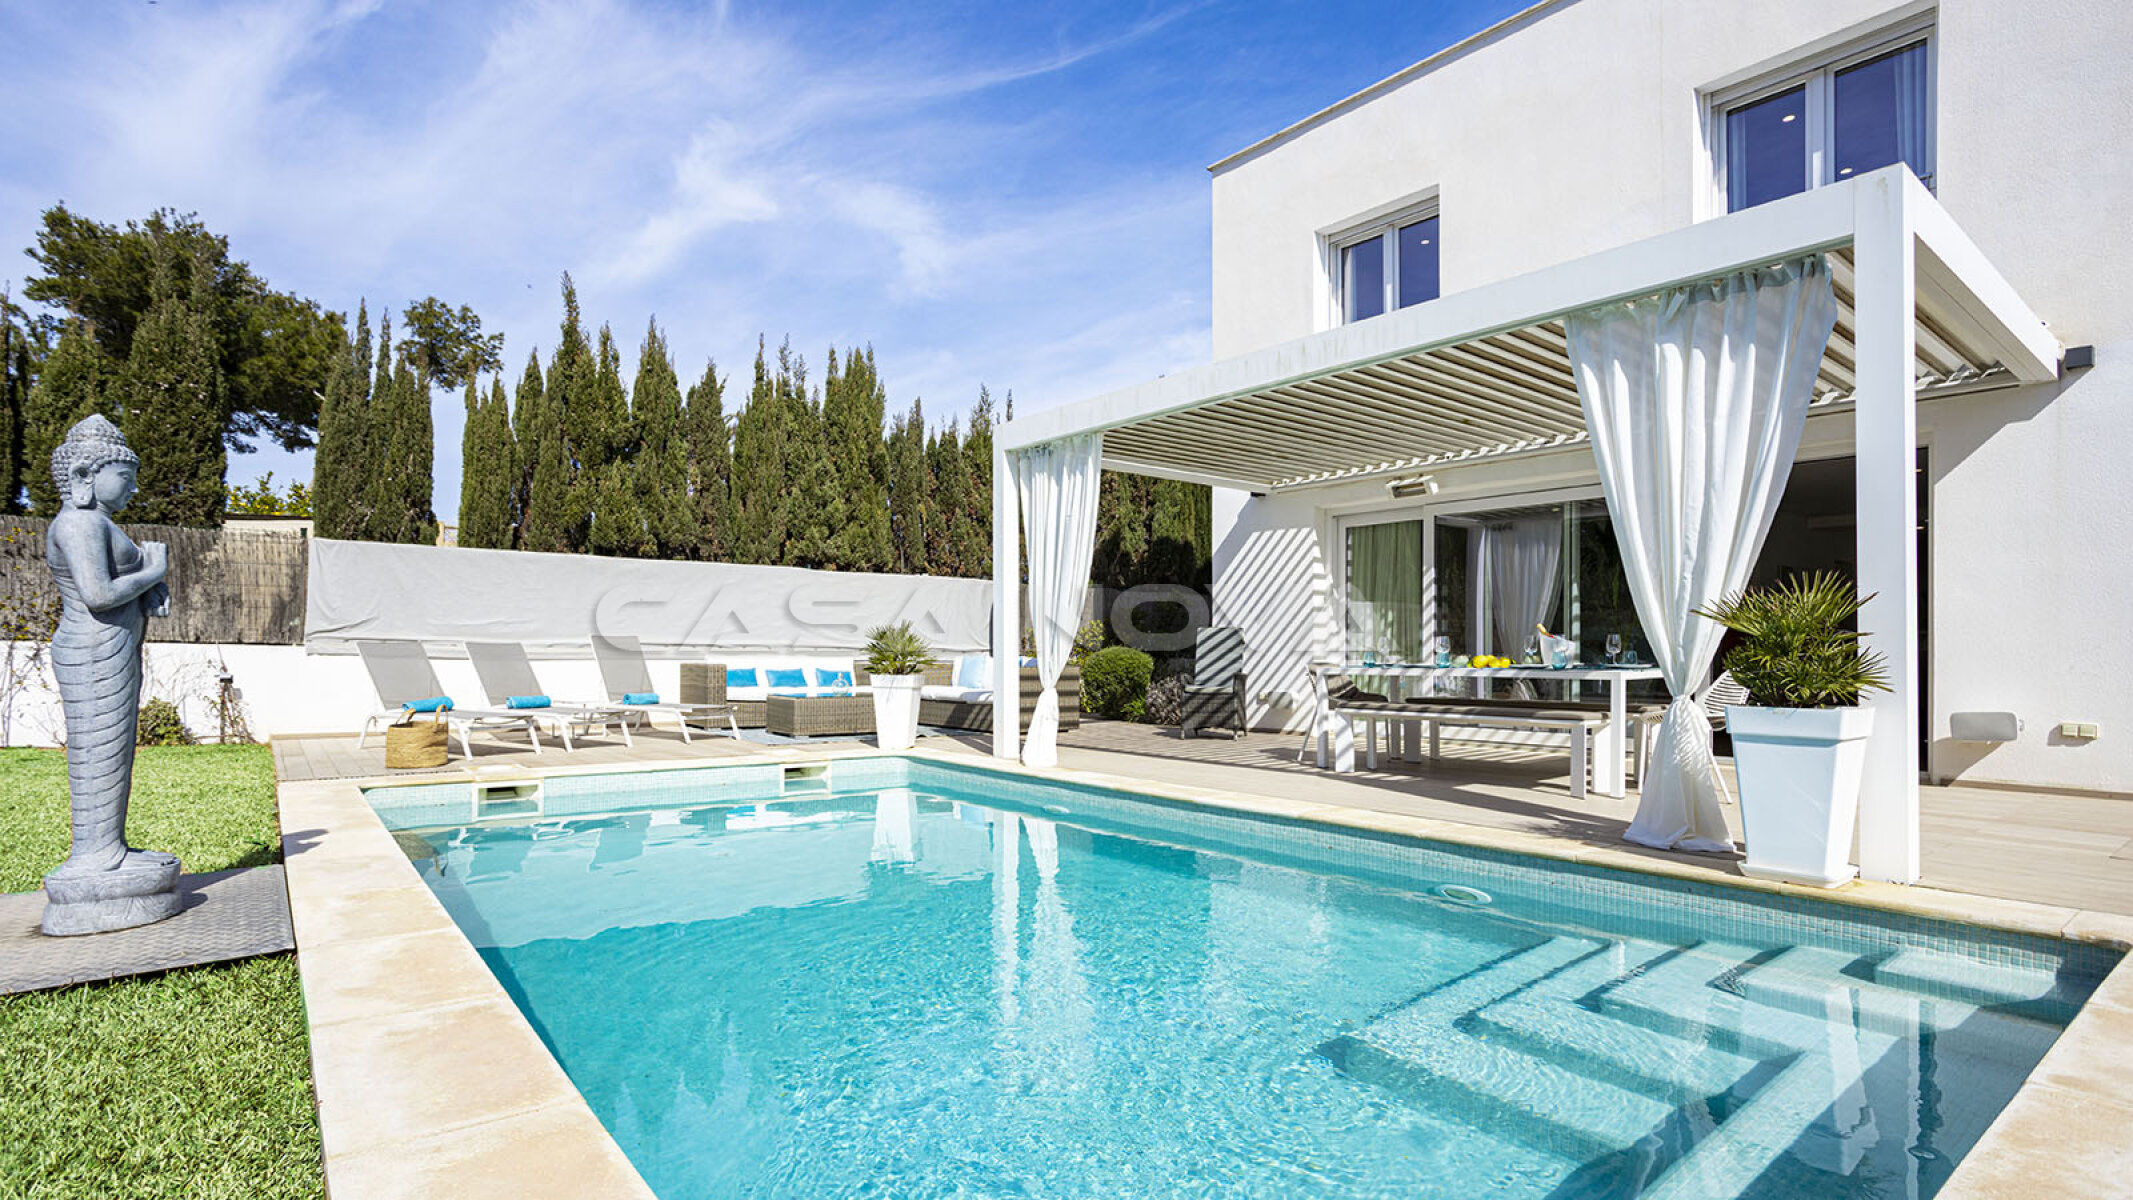 Fant�stica Mallorca villa con piscina privada